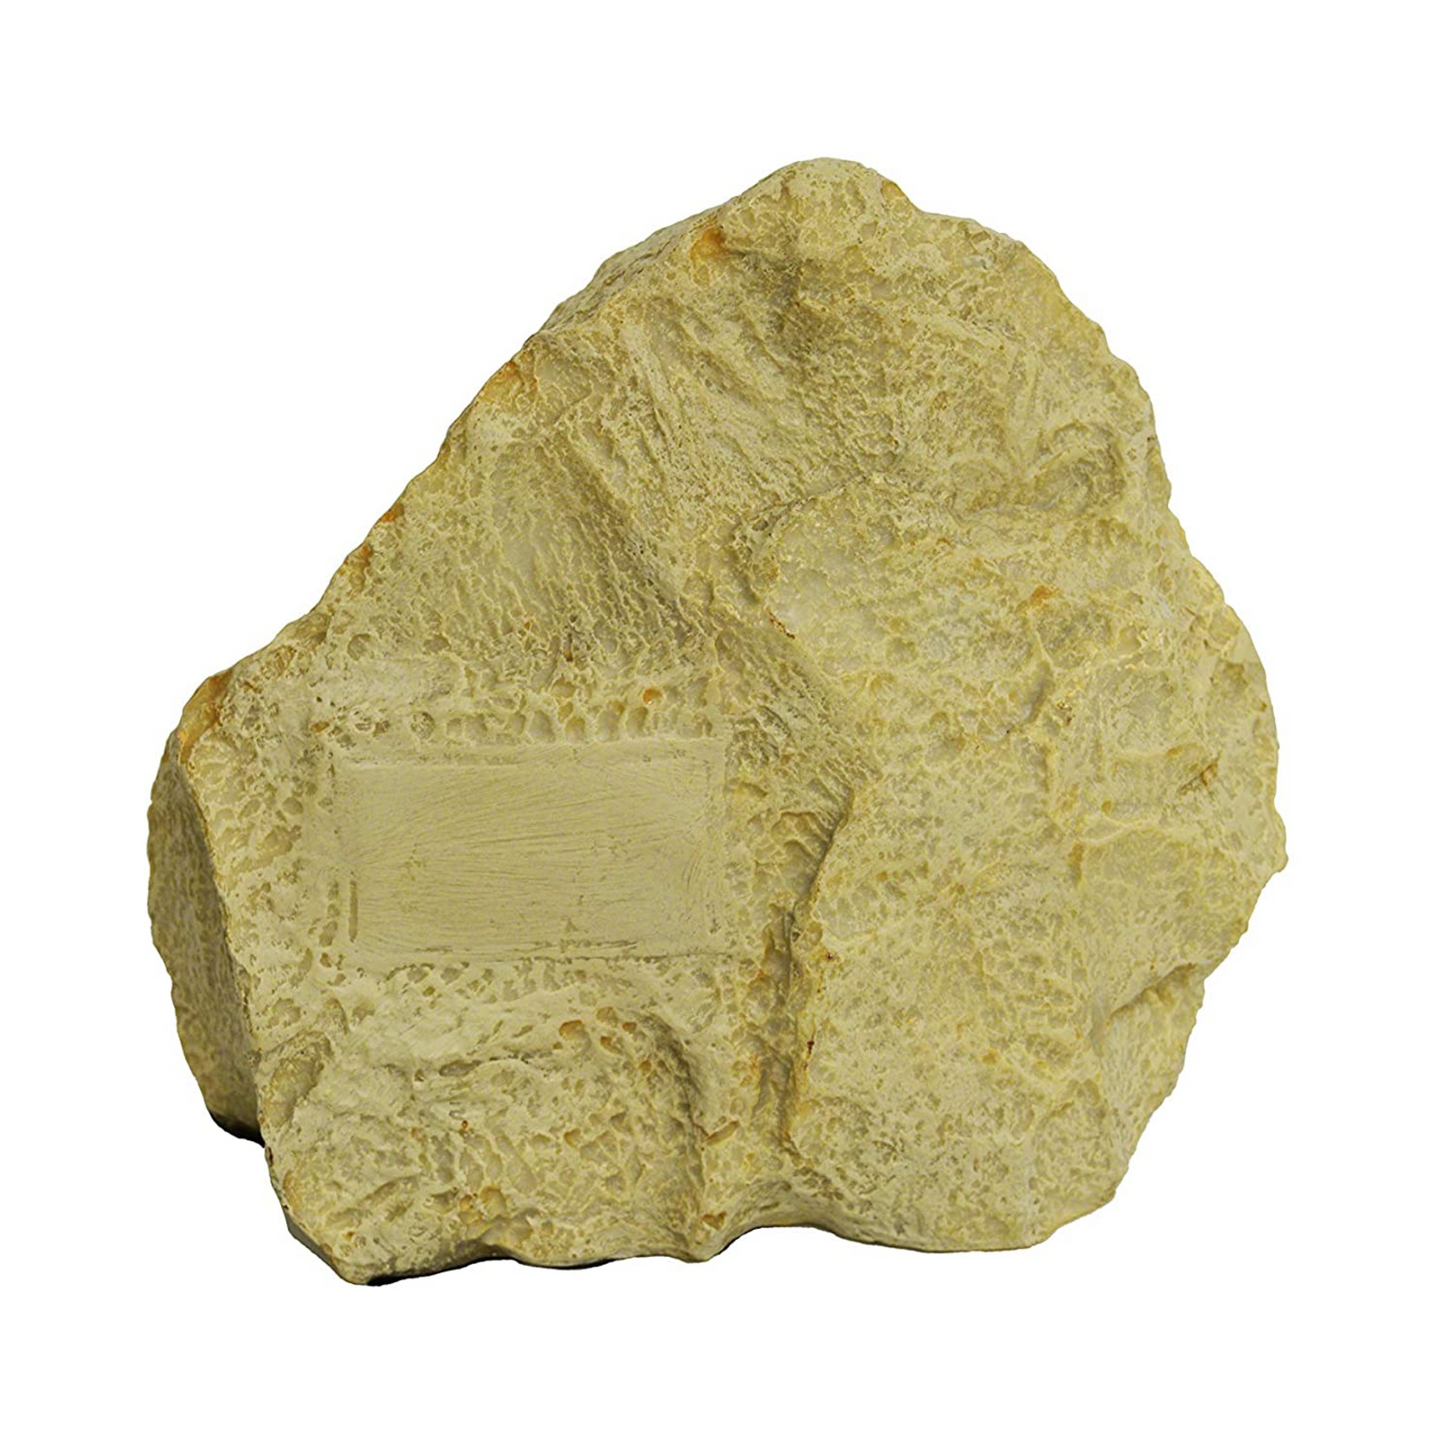 Midlee Rock Pet Urn (Large)